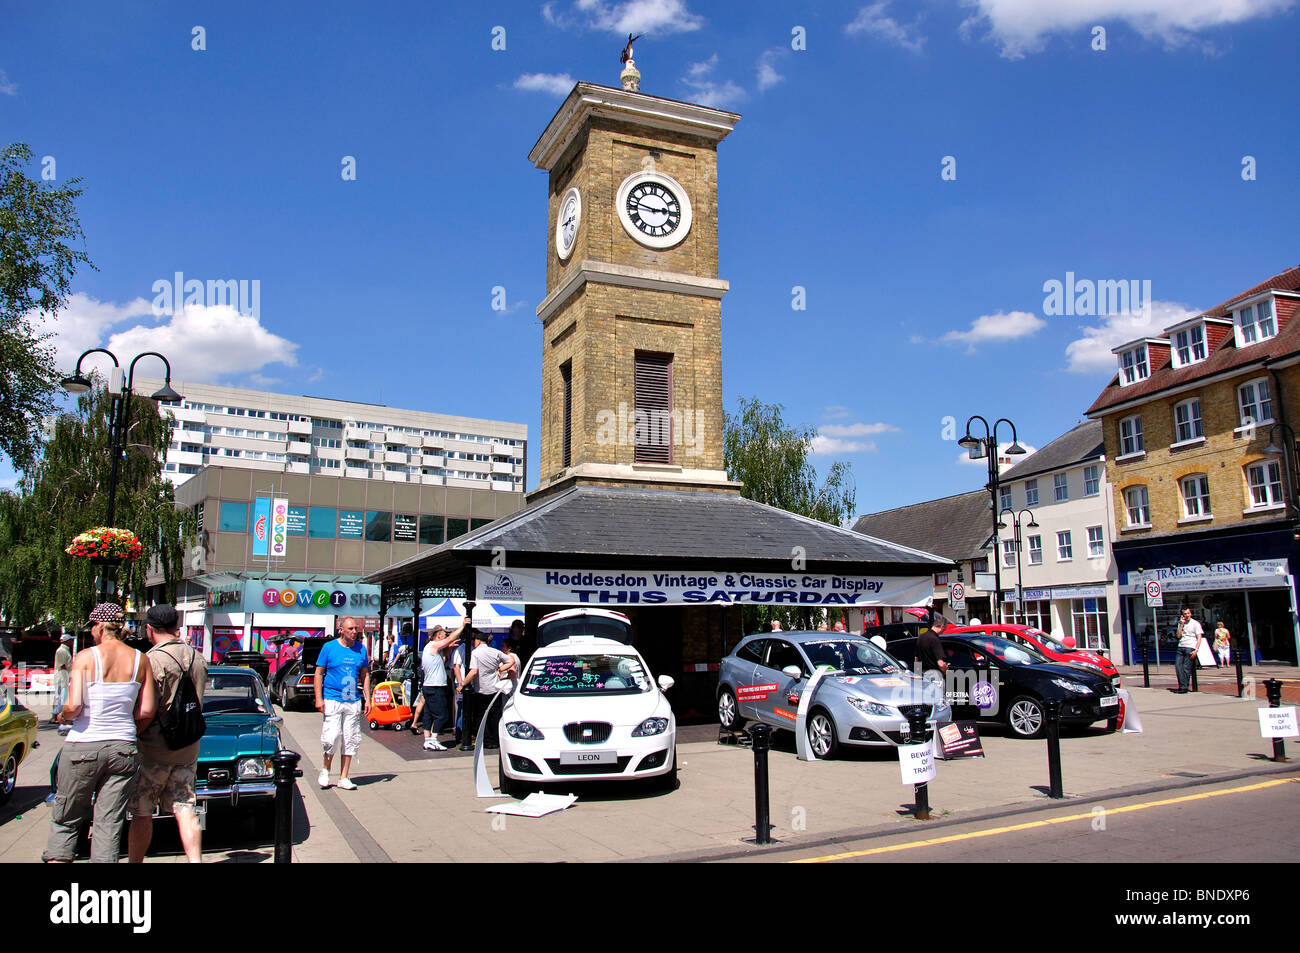 Classic rallye de voitures au centre ville, Hoddesdon, Hertfordshire, Angleterre, Royaume-Uni Banque D'Images